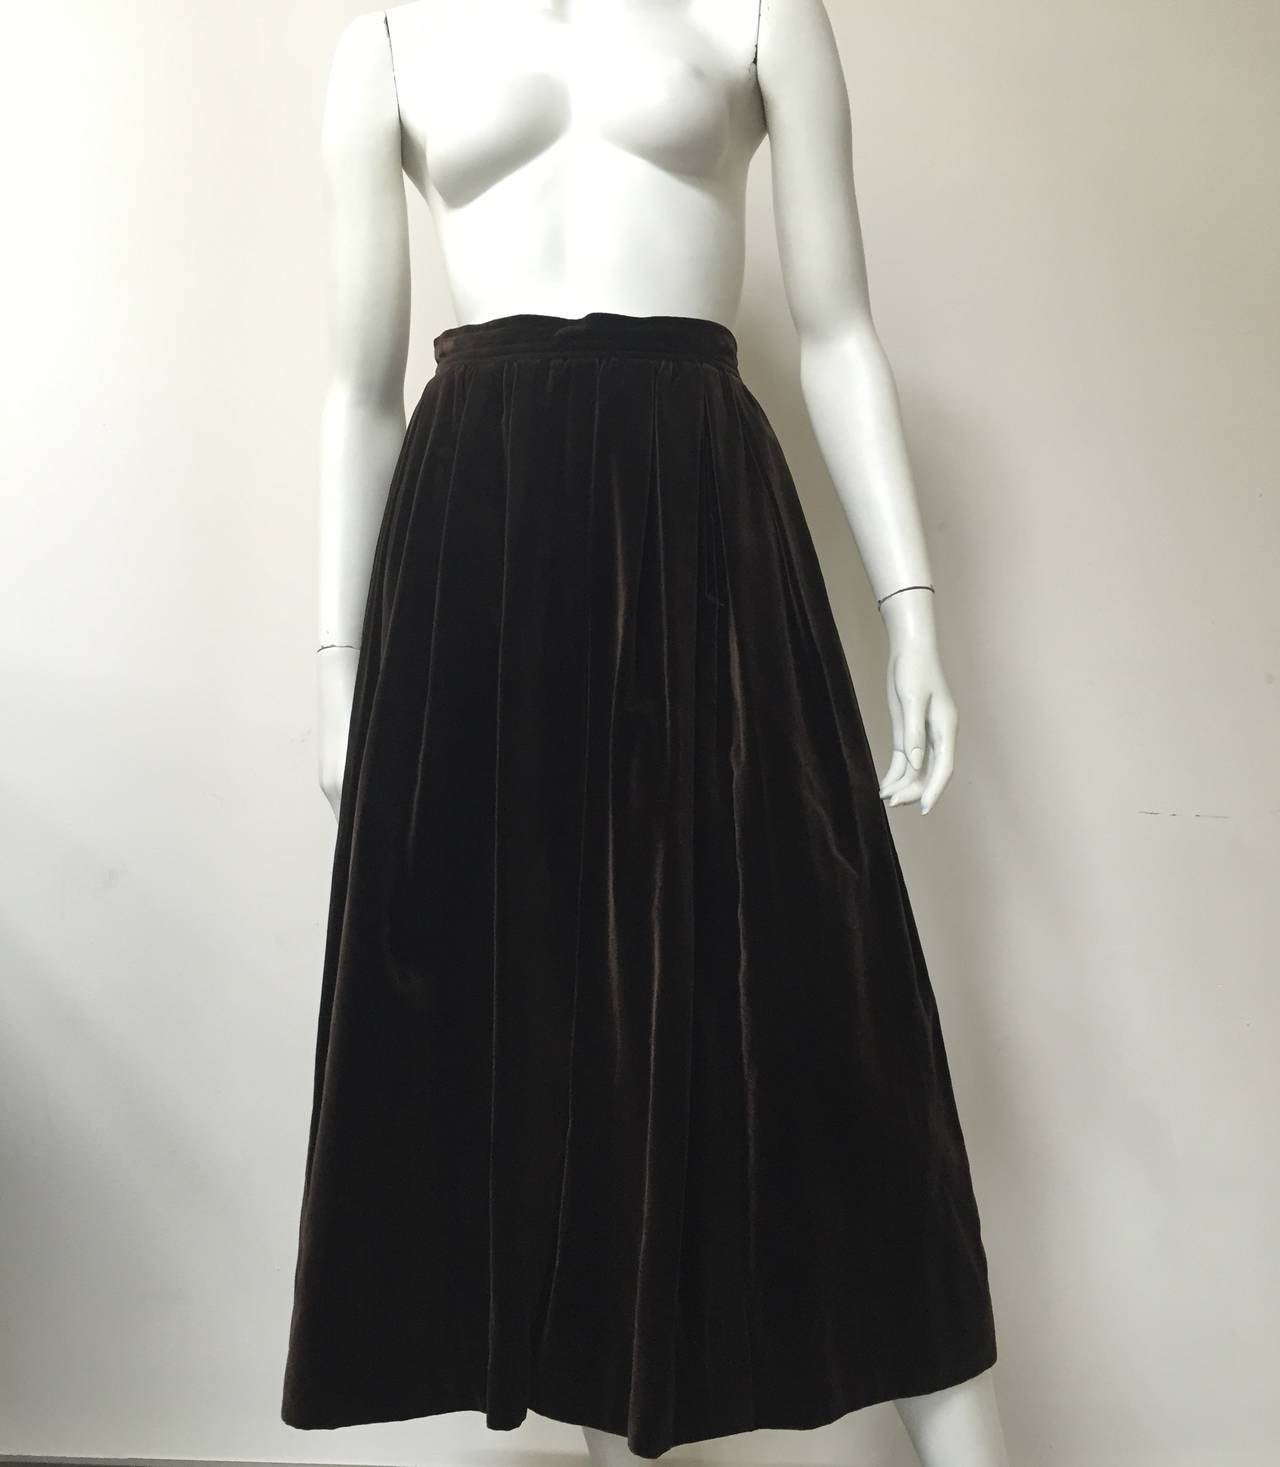 Saint Laurent Rive Gauche 70s velvet skirt with pockets size 6. 6